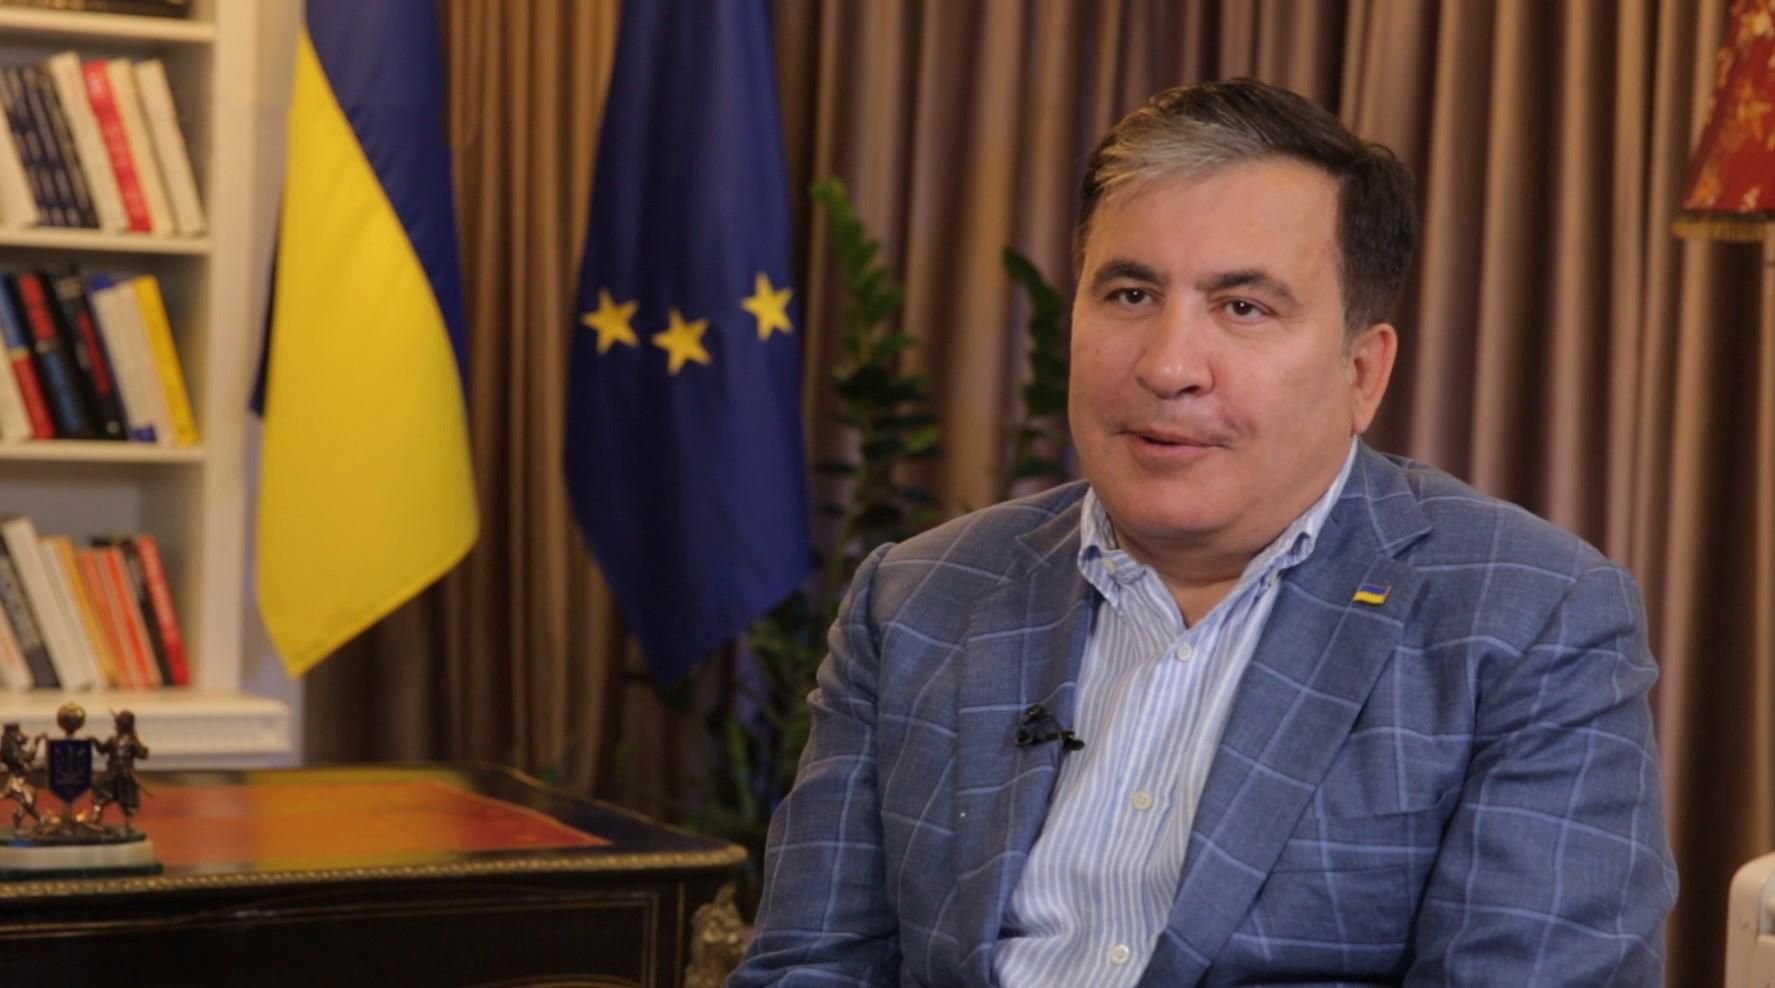 Саакашвили откровенно рассказал, зачем он Зеленскому и кто был против него как вице-премьера